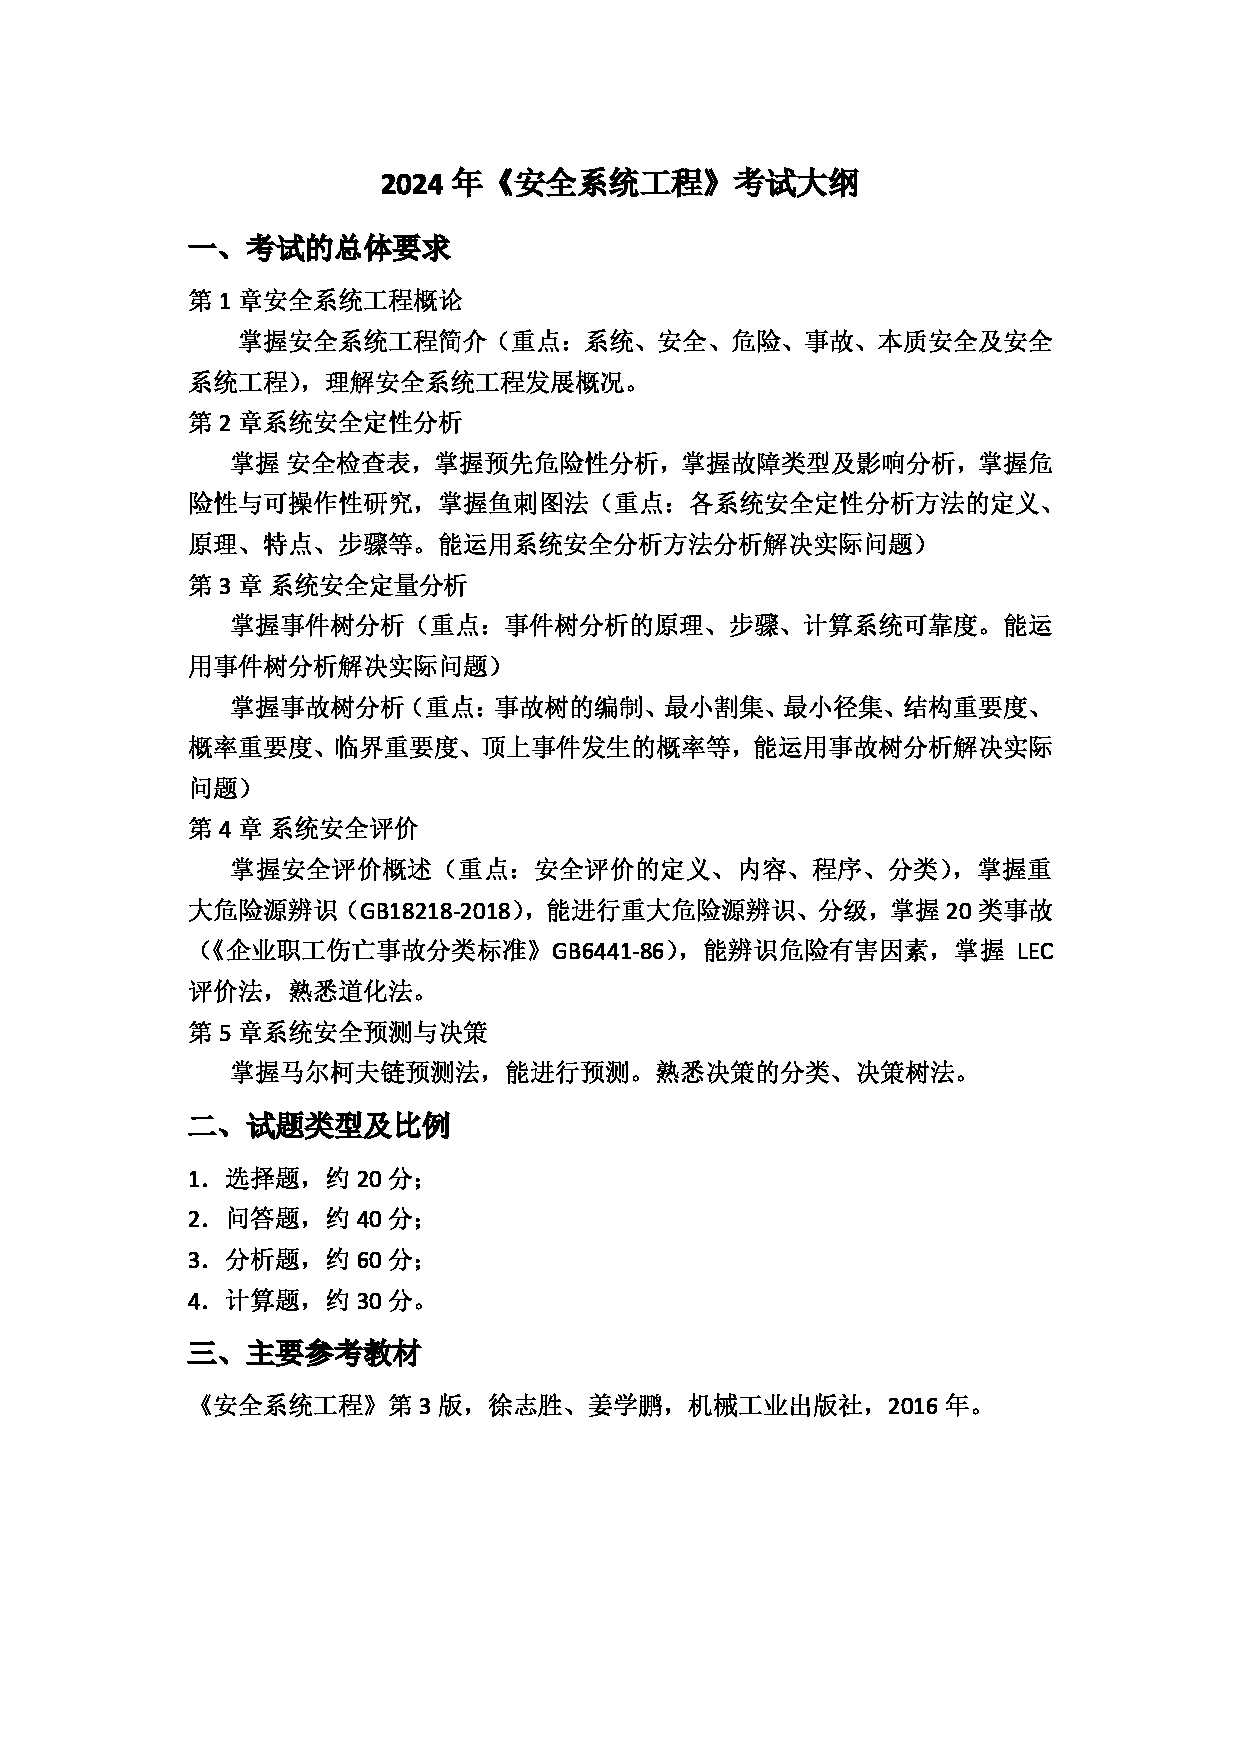 2024考研大纲：上海应用技术大学2024年考研自命题科目 安全系统工程 考试大纲第1页